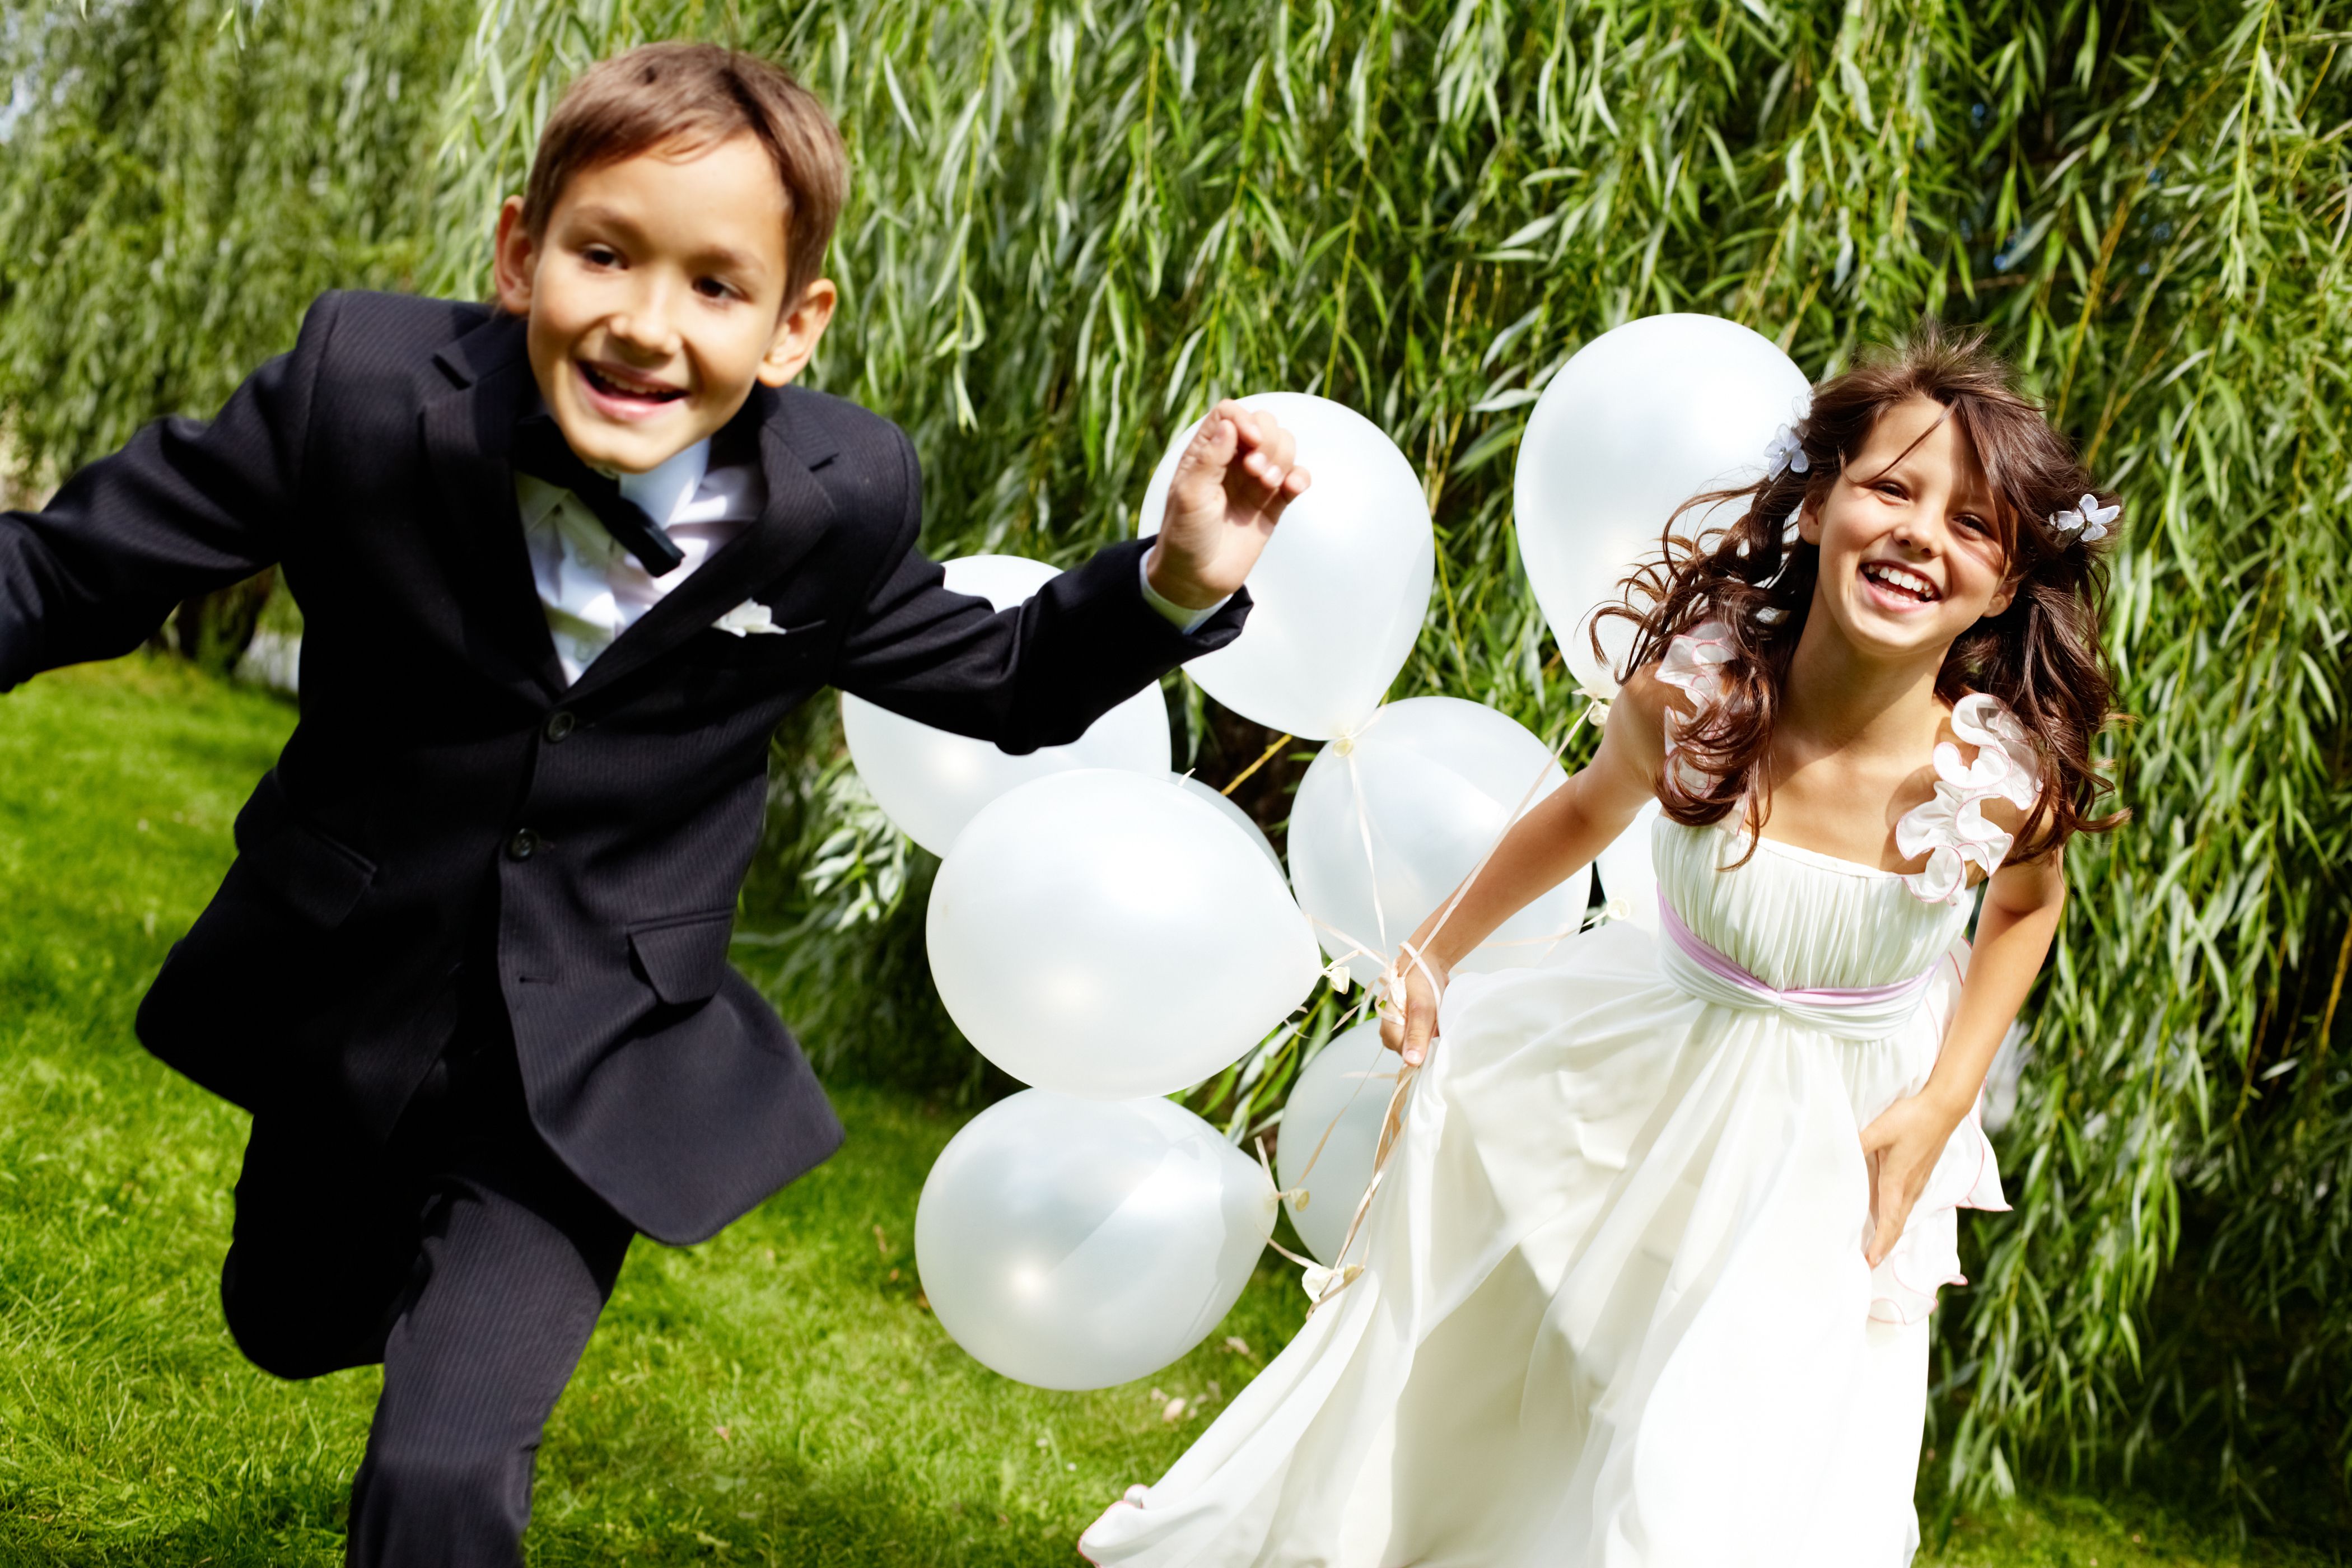 детям на свадьбе нужно соответствующее развлечение